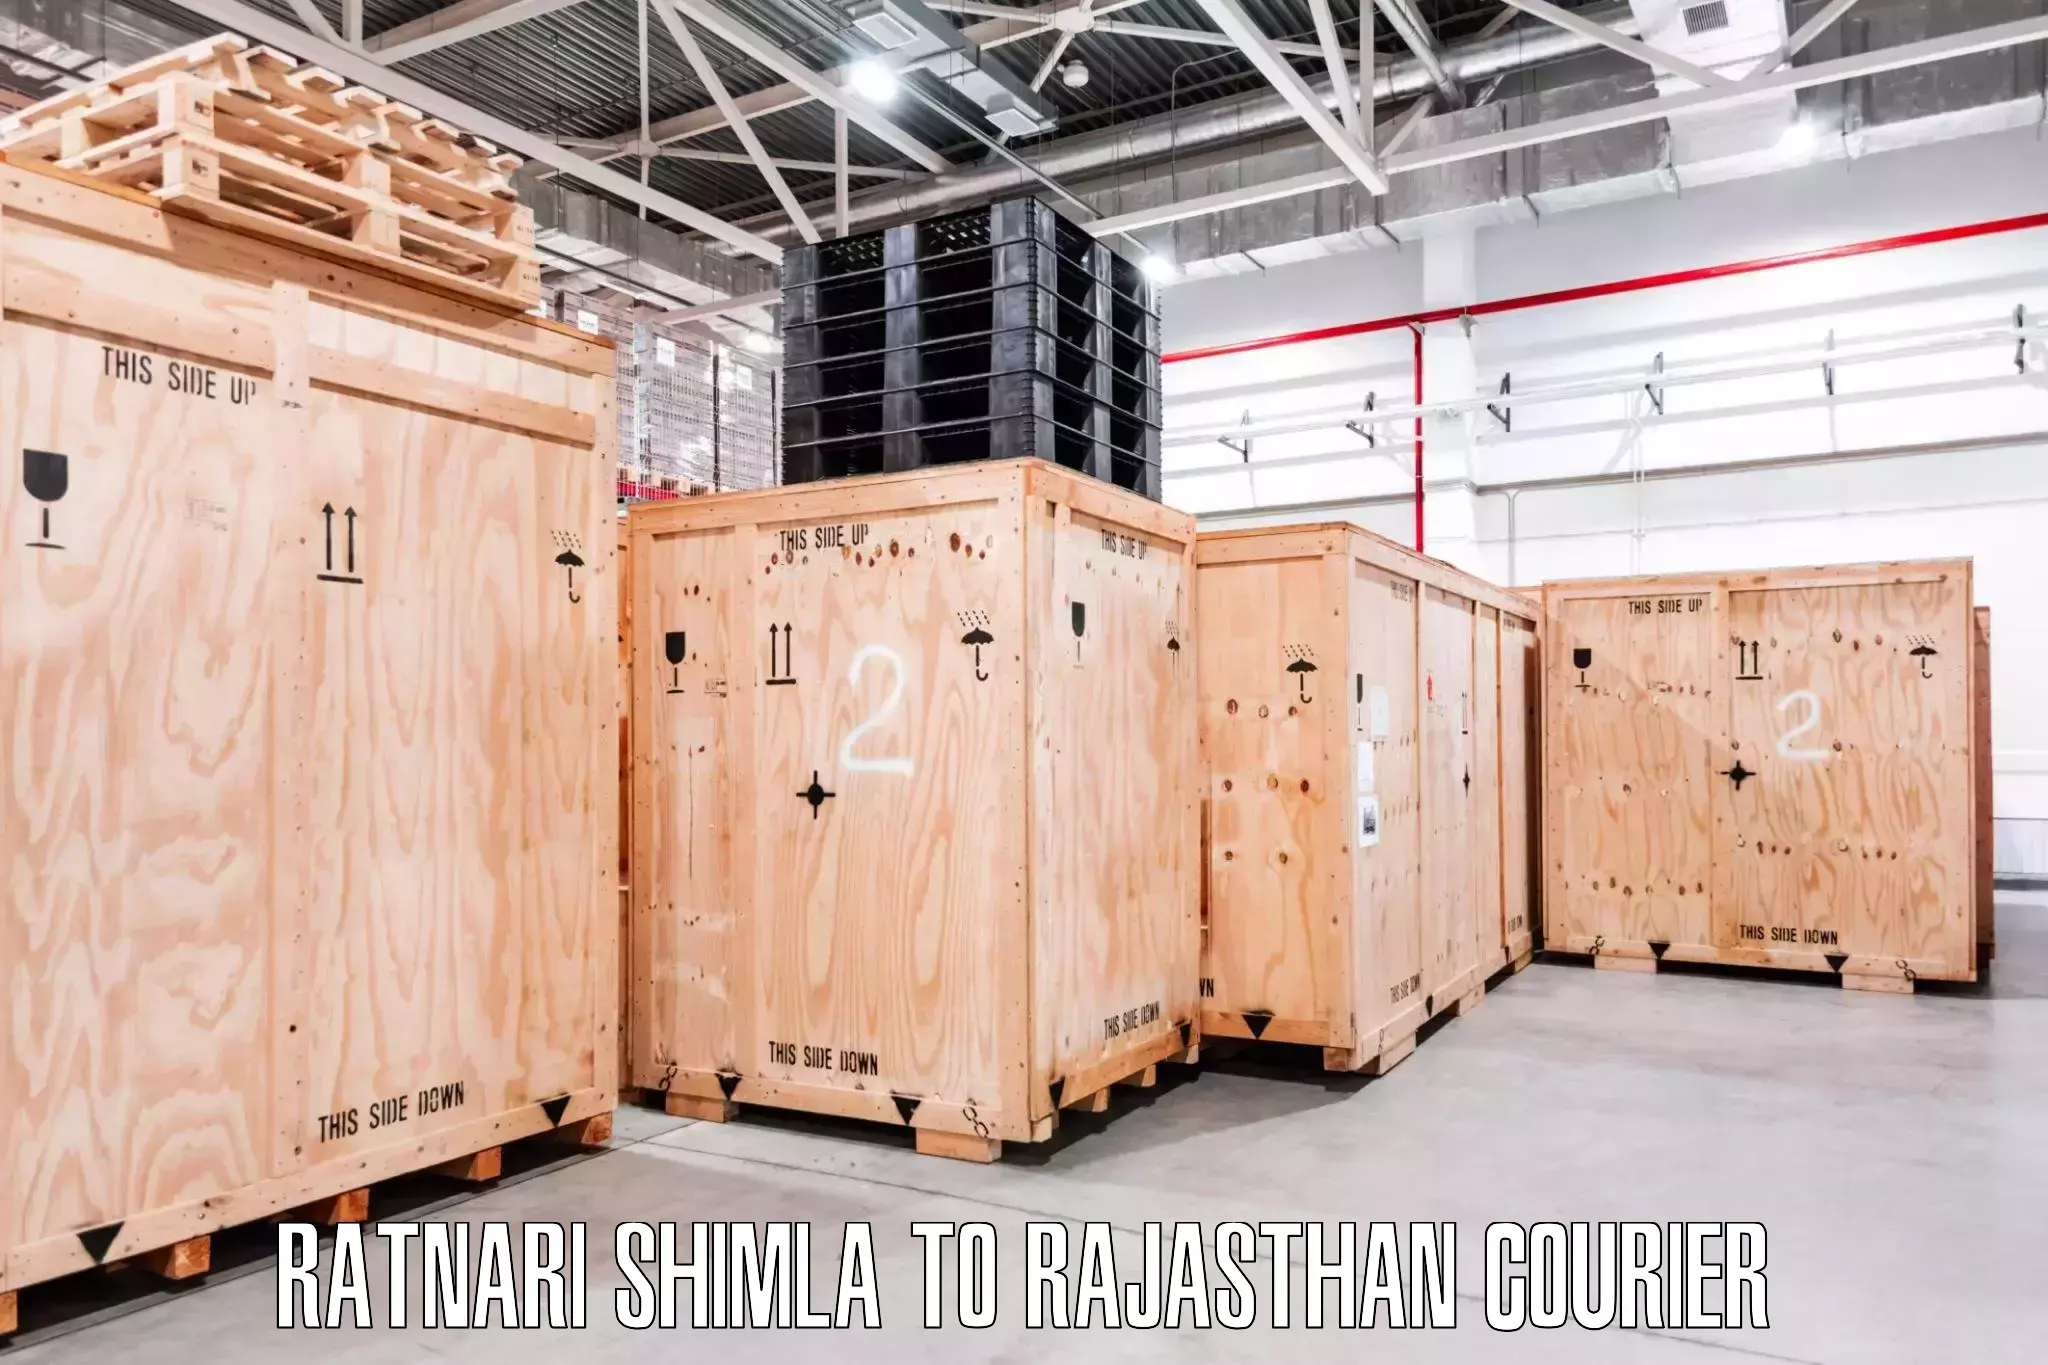 Moving and storage services Ratnari Shimla to Rajsamand